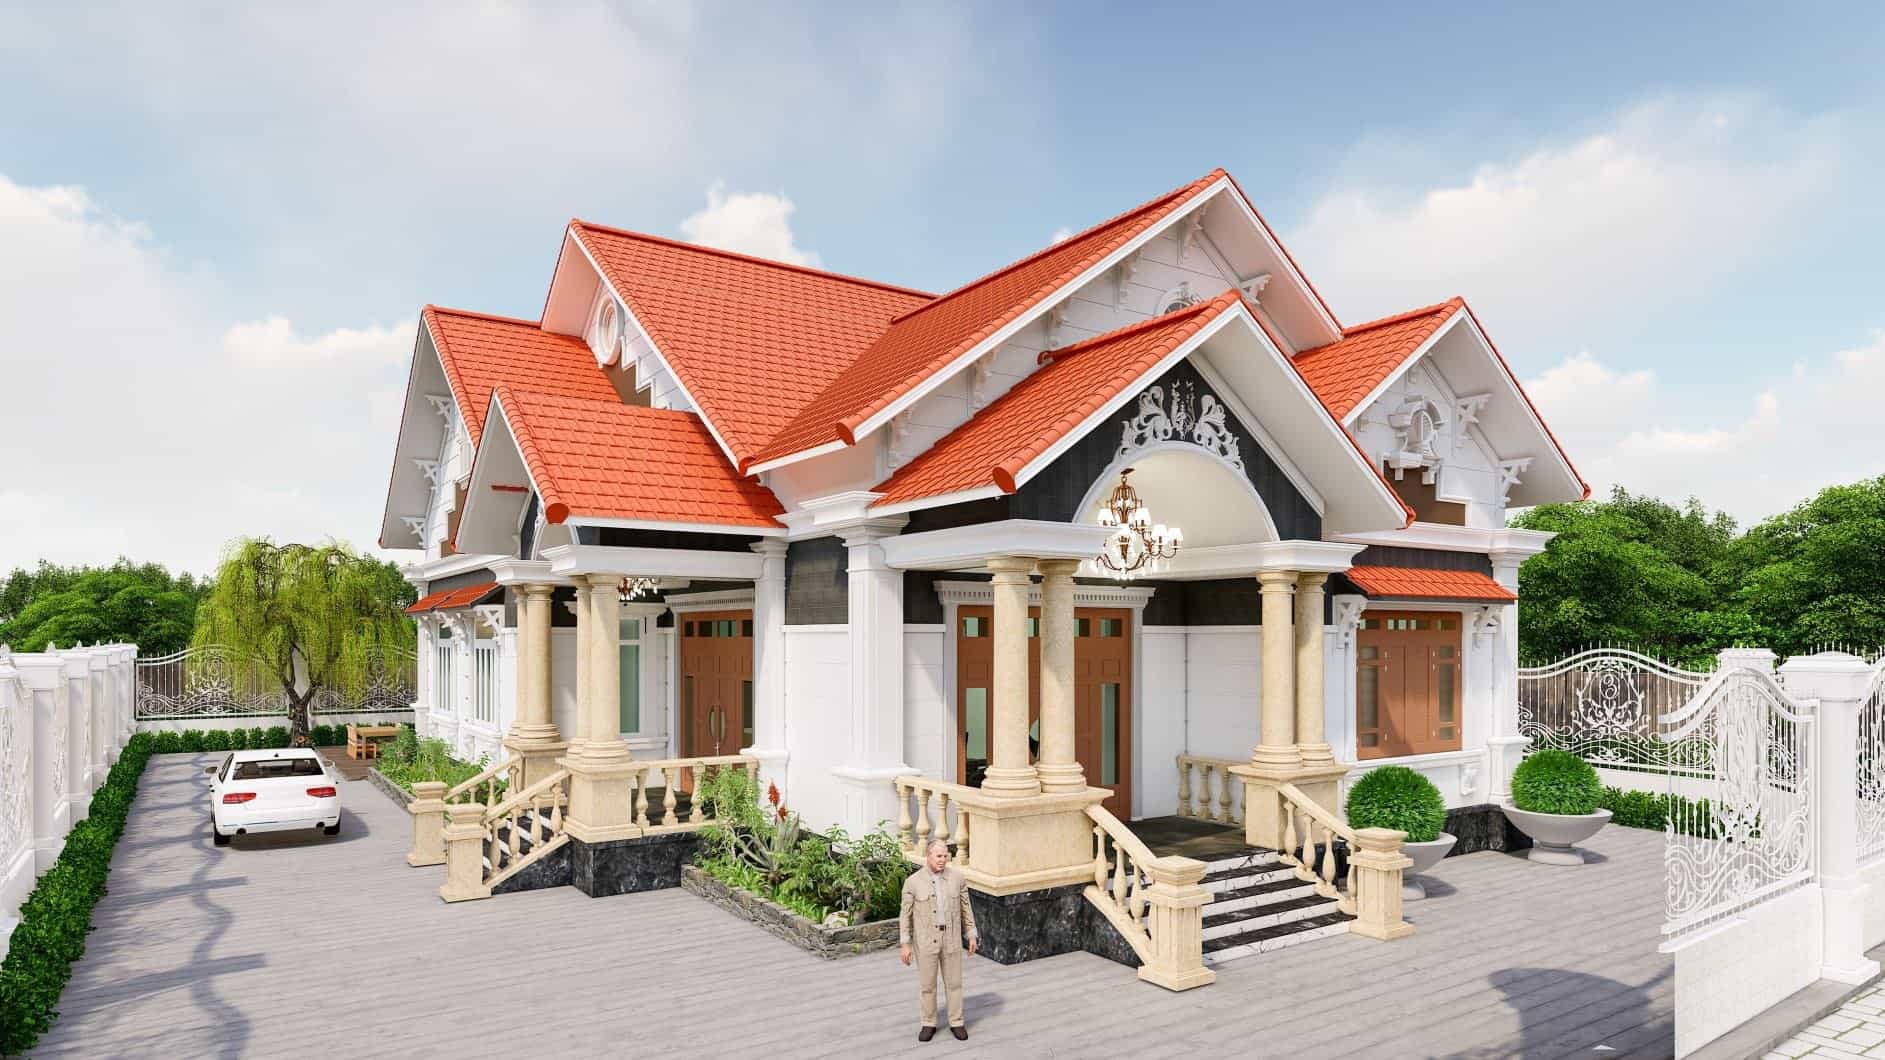 Thiết kế nhà biệt thự 1 tầng đẹp hiện đại CĐT ông Đông  Hà Nội BT11510